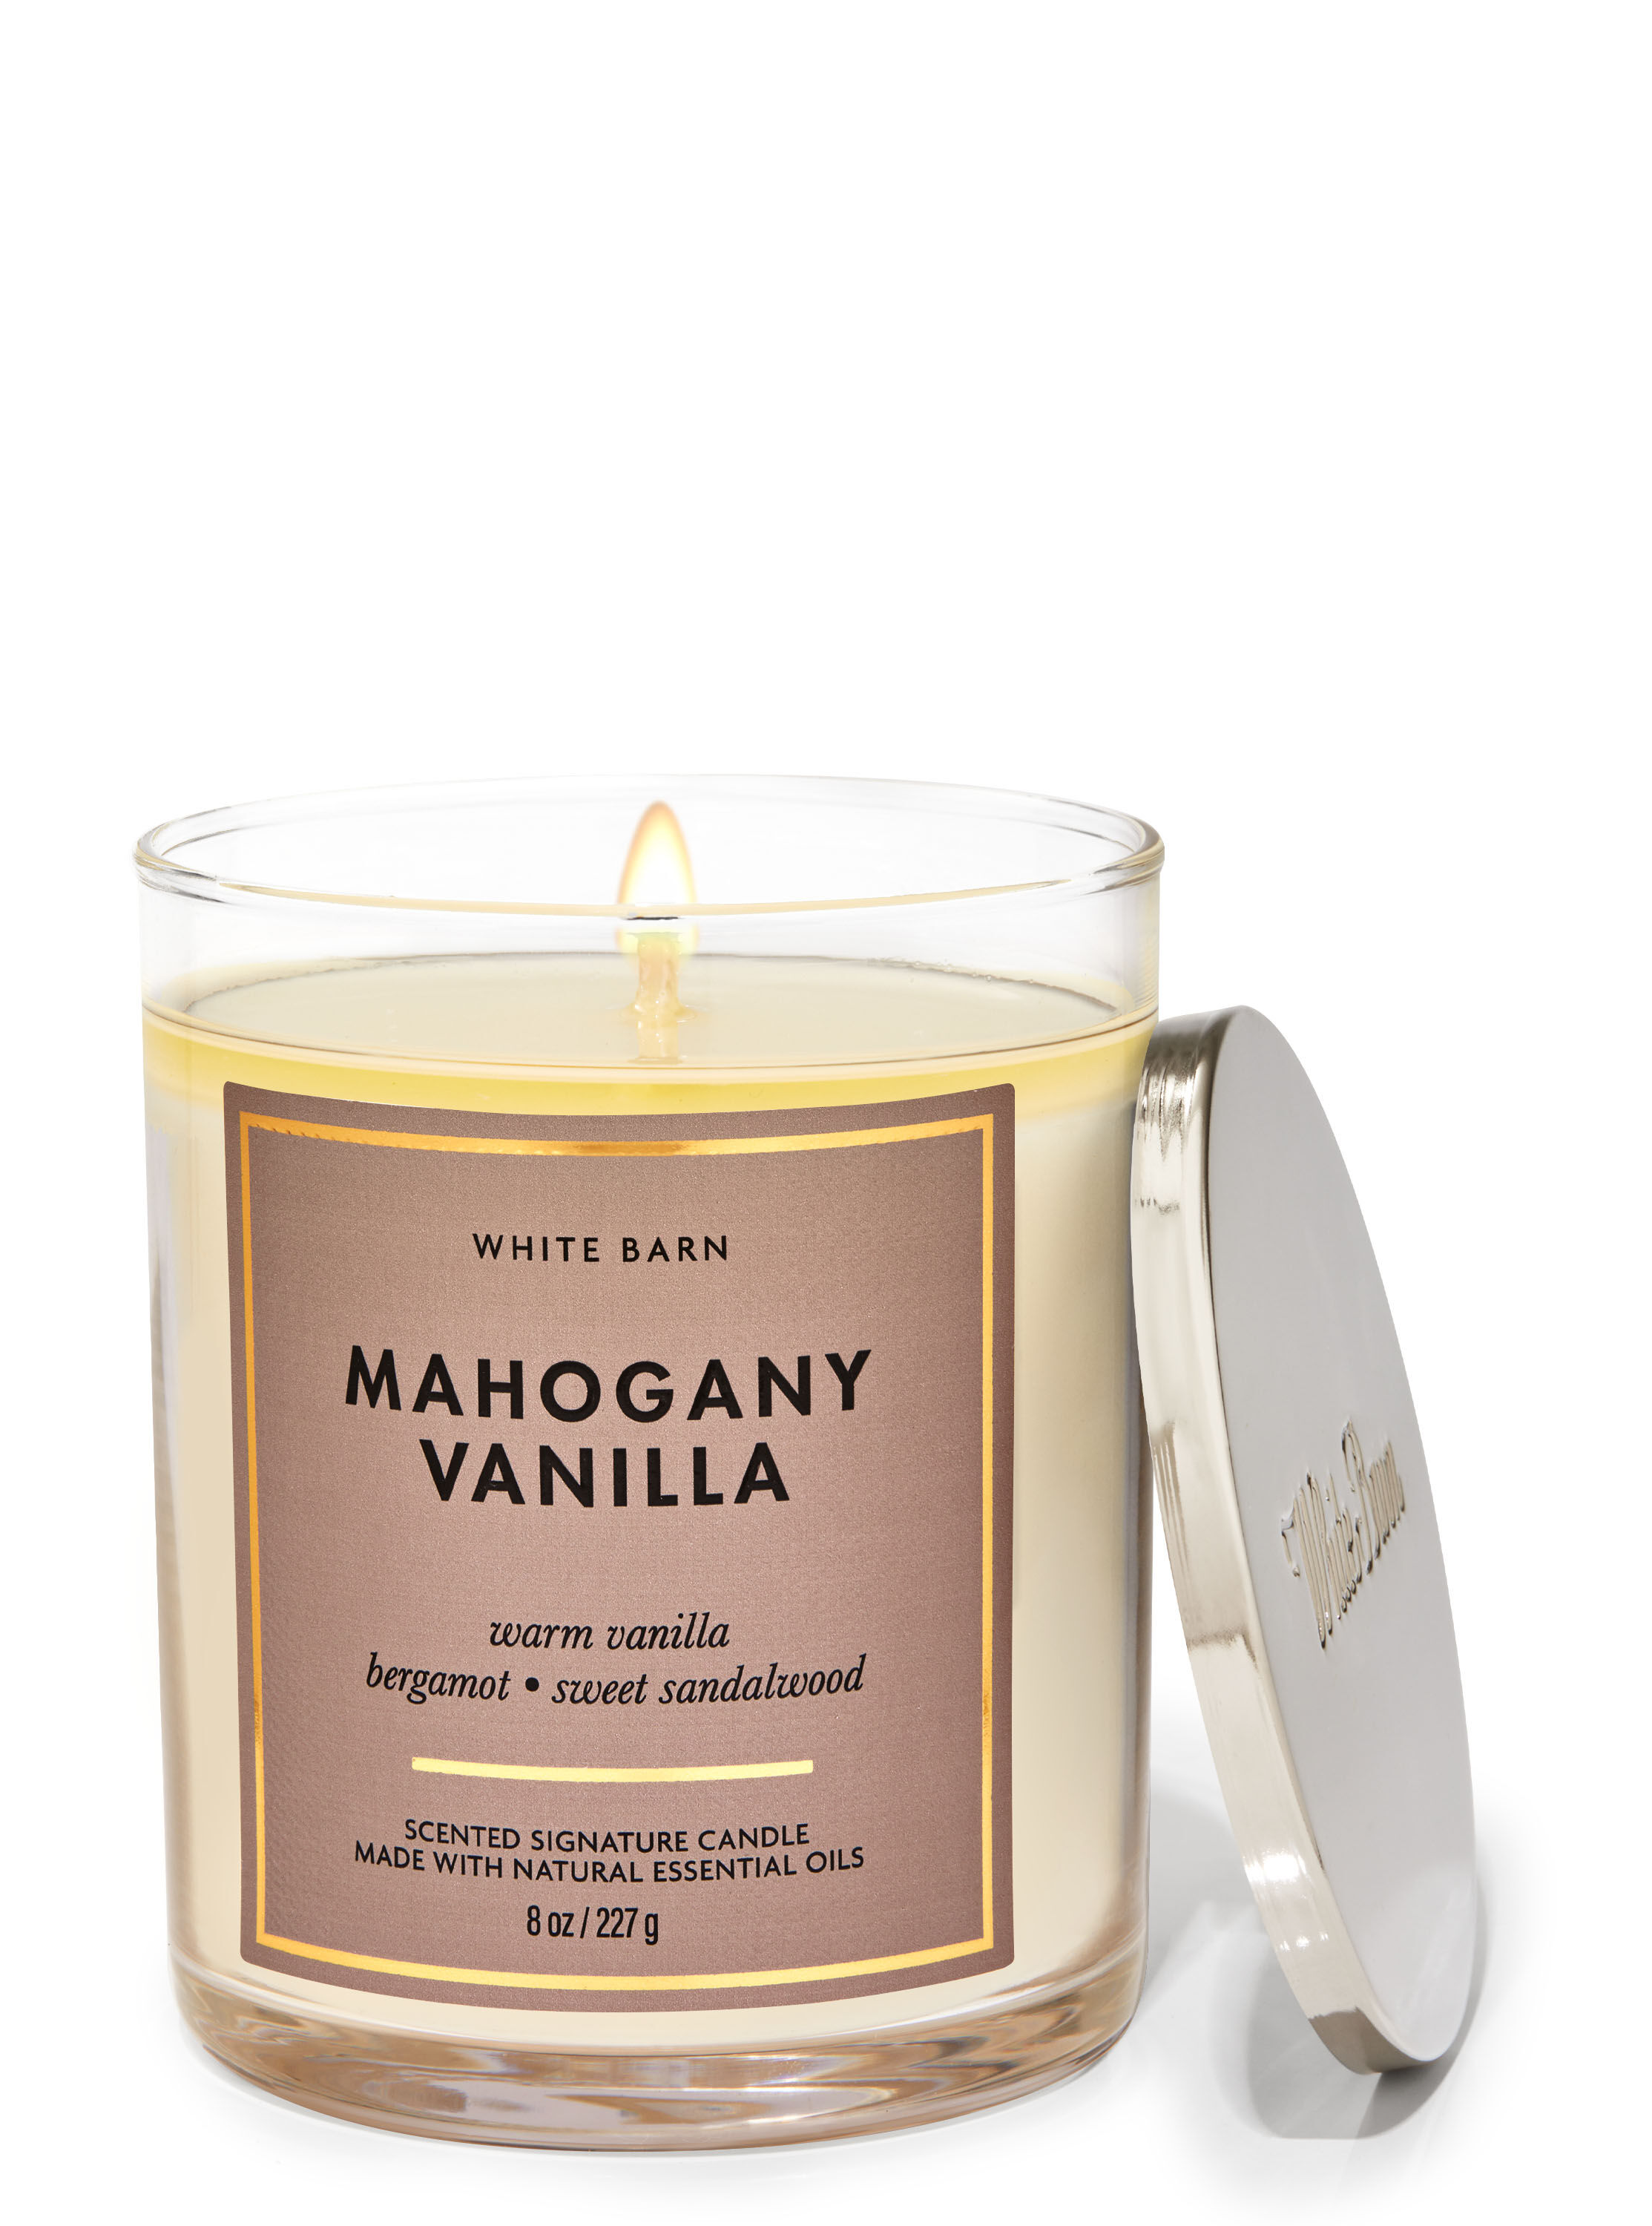 Mahogany Vanilla Single Wick Candle